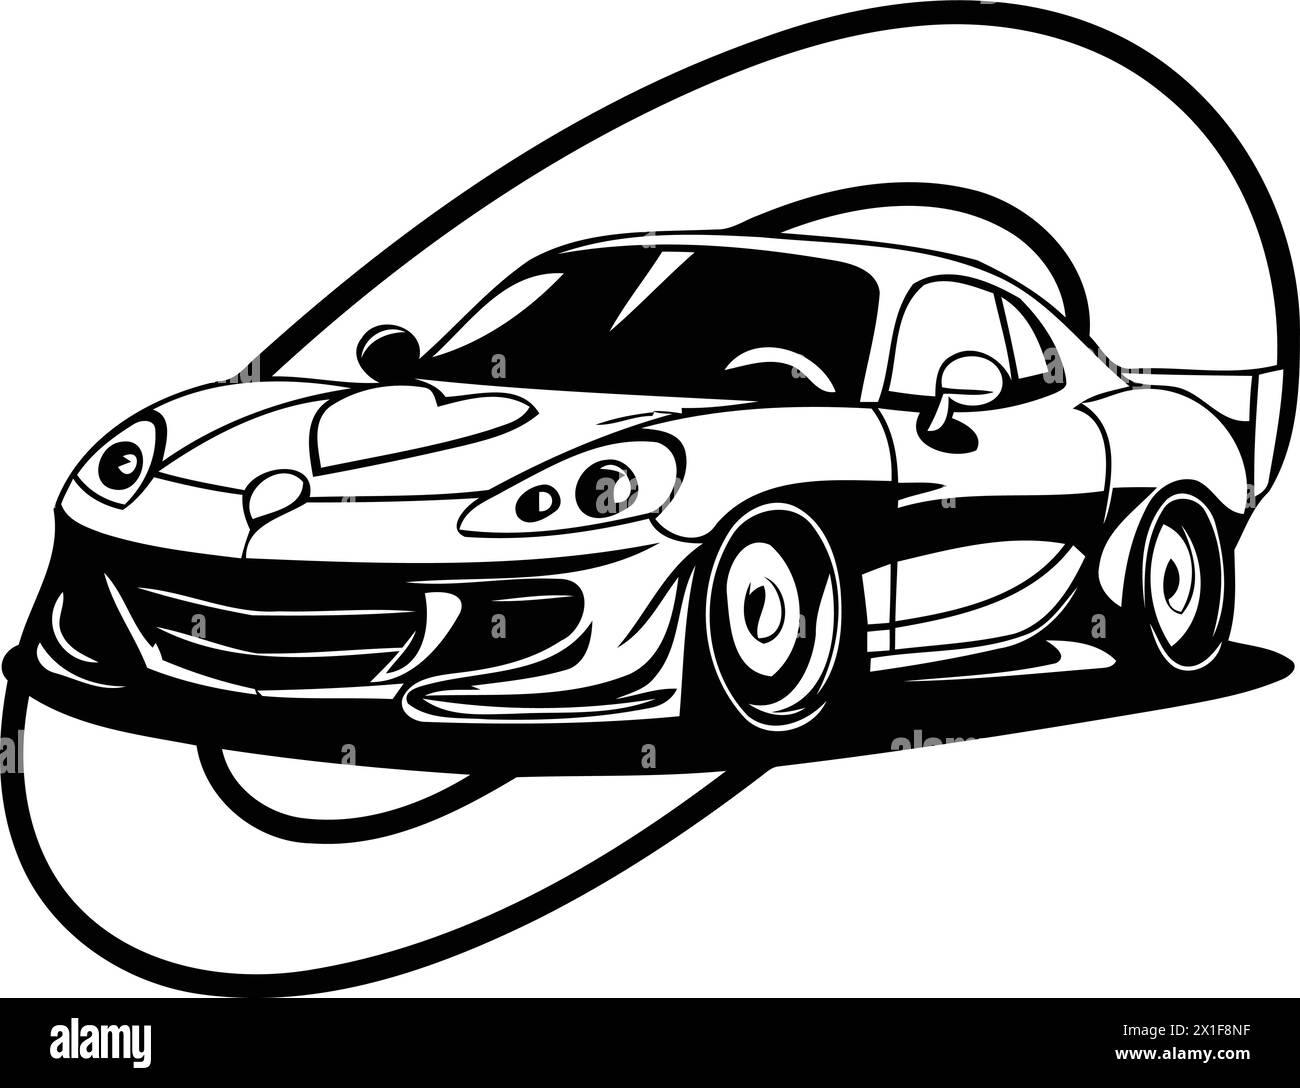 Ilustración vectorial de un coche deportivo en forma de neumático naranja Ilustración del Vector